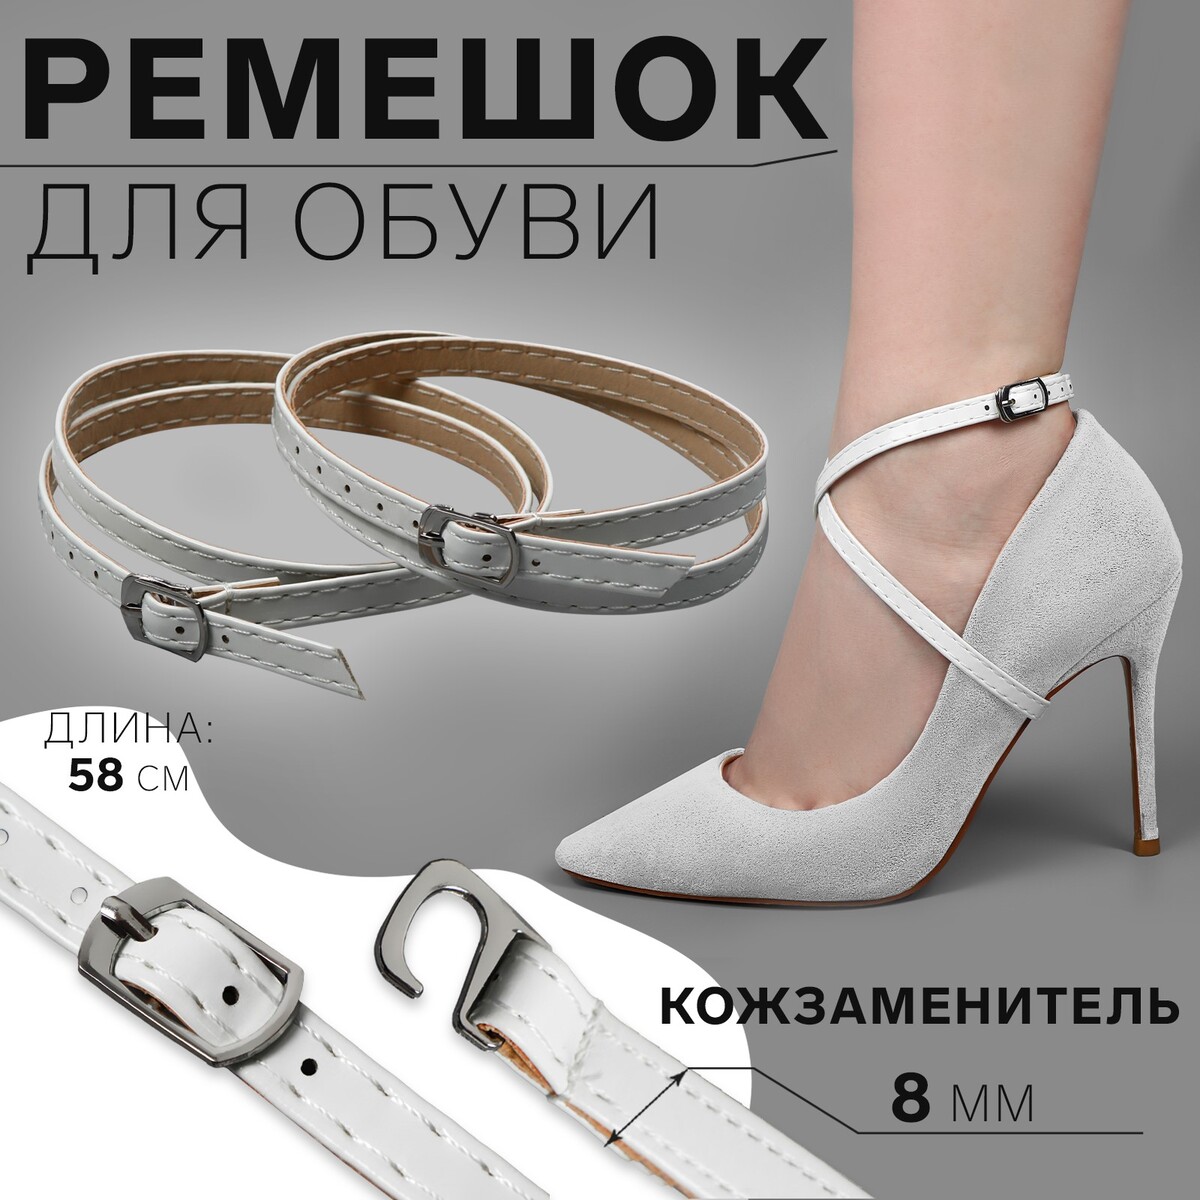 Ремешок для обуви, искусственная кожа, 58 см, 8 мм, 2 шт, цвет белый